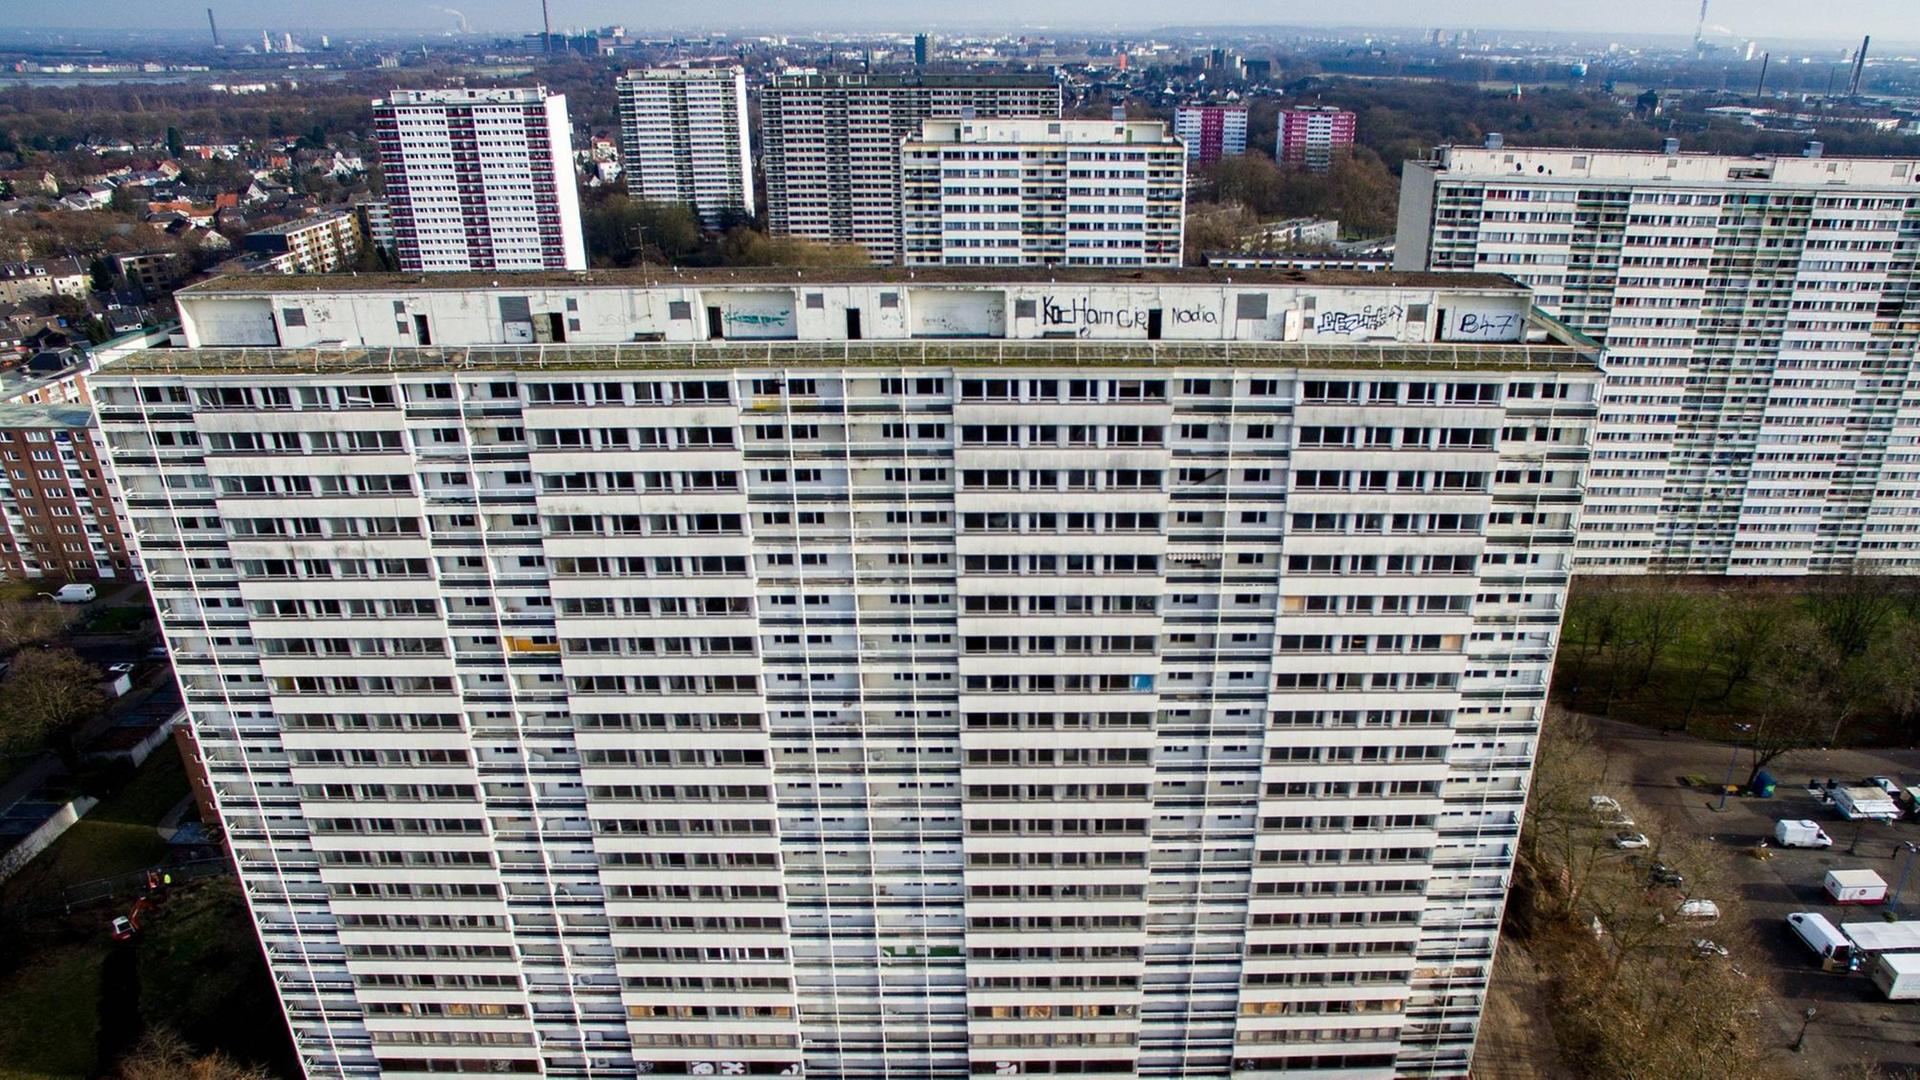 Blick aus der Vogelperspektive auf große Hochhäuser mit Mietswohnungen.